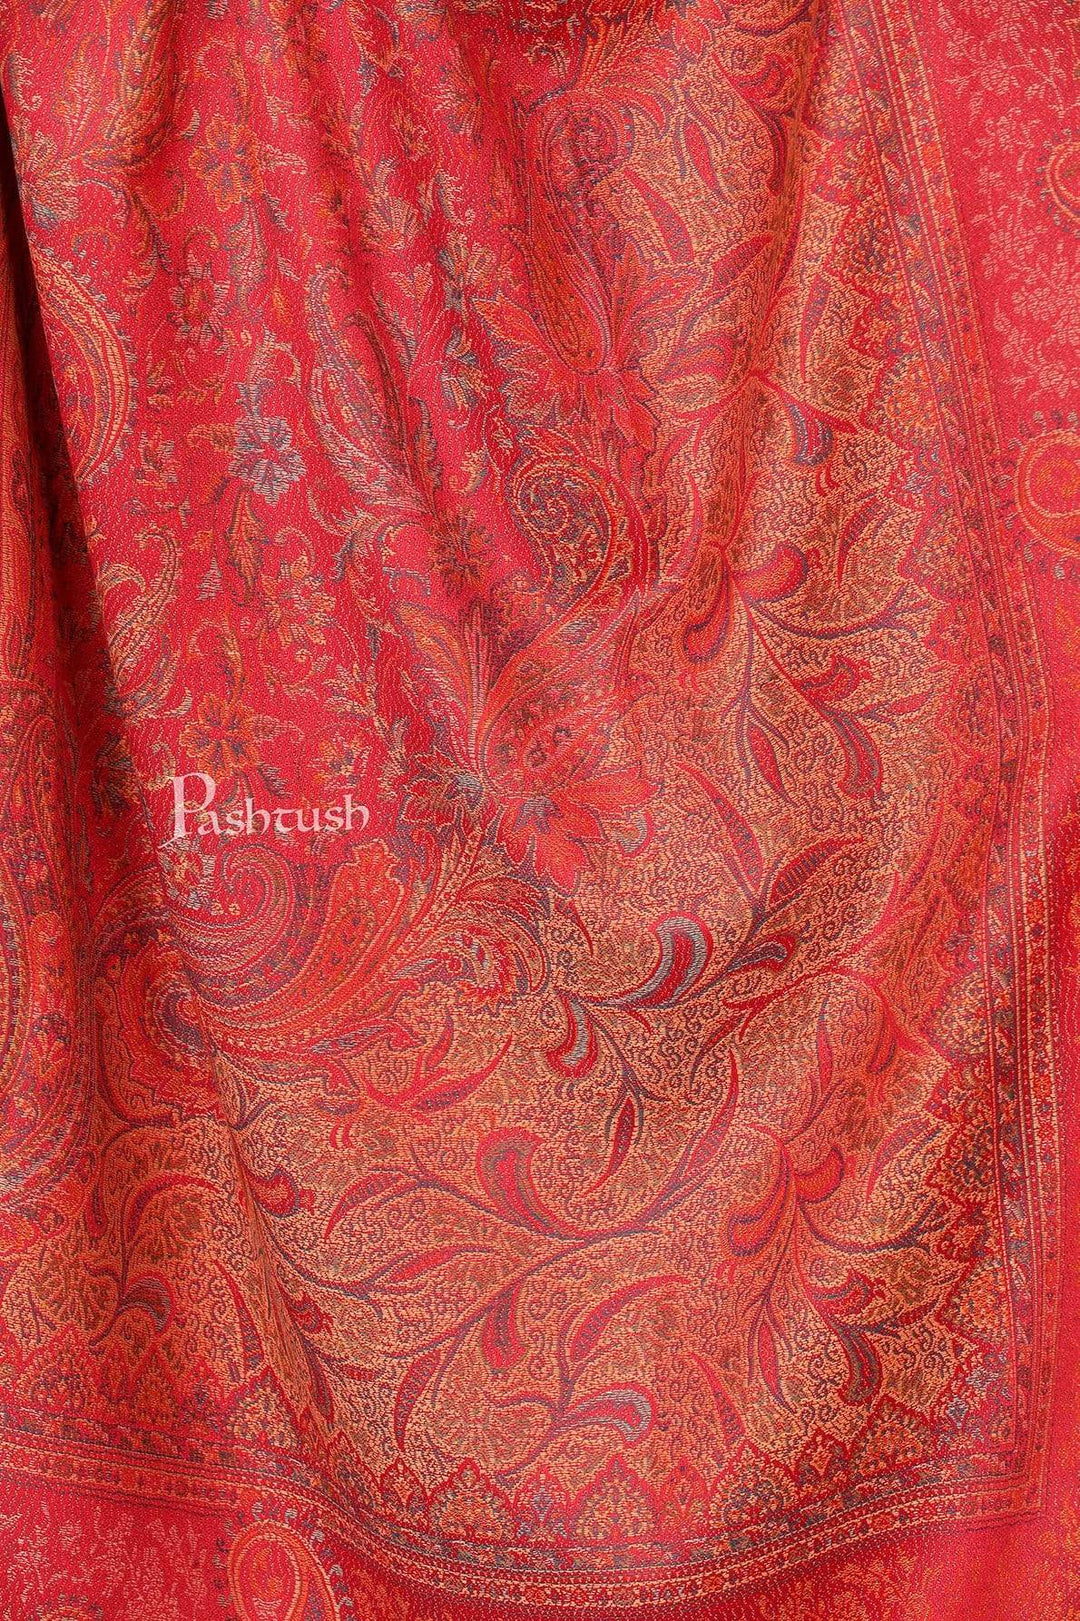 Pashtush India Shawl Pashtush Women's Kashmiri Shawl, Faux Pashmina Design, Fuchsia